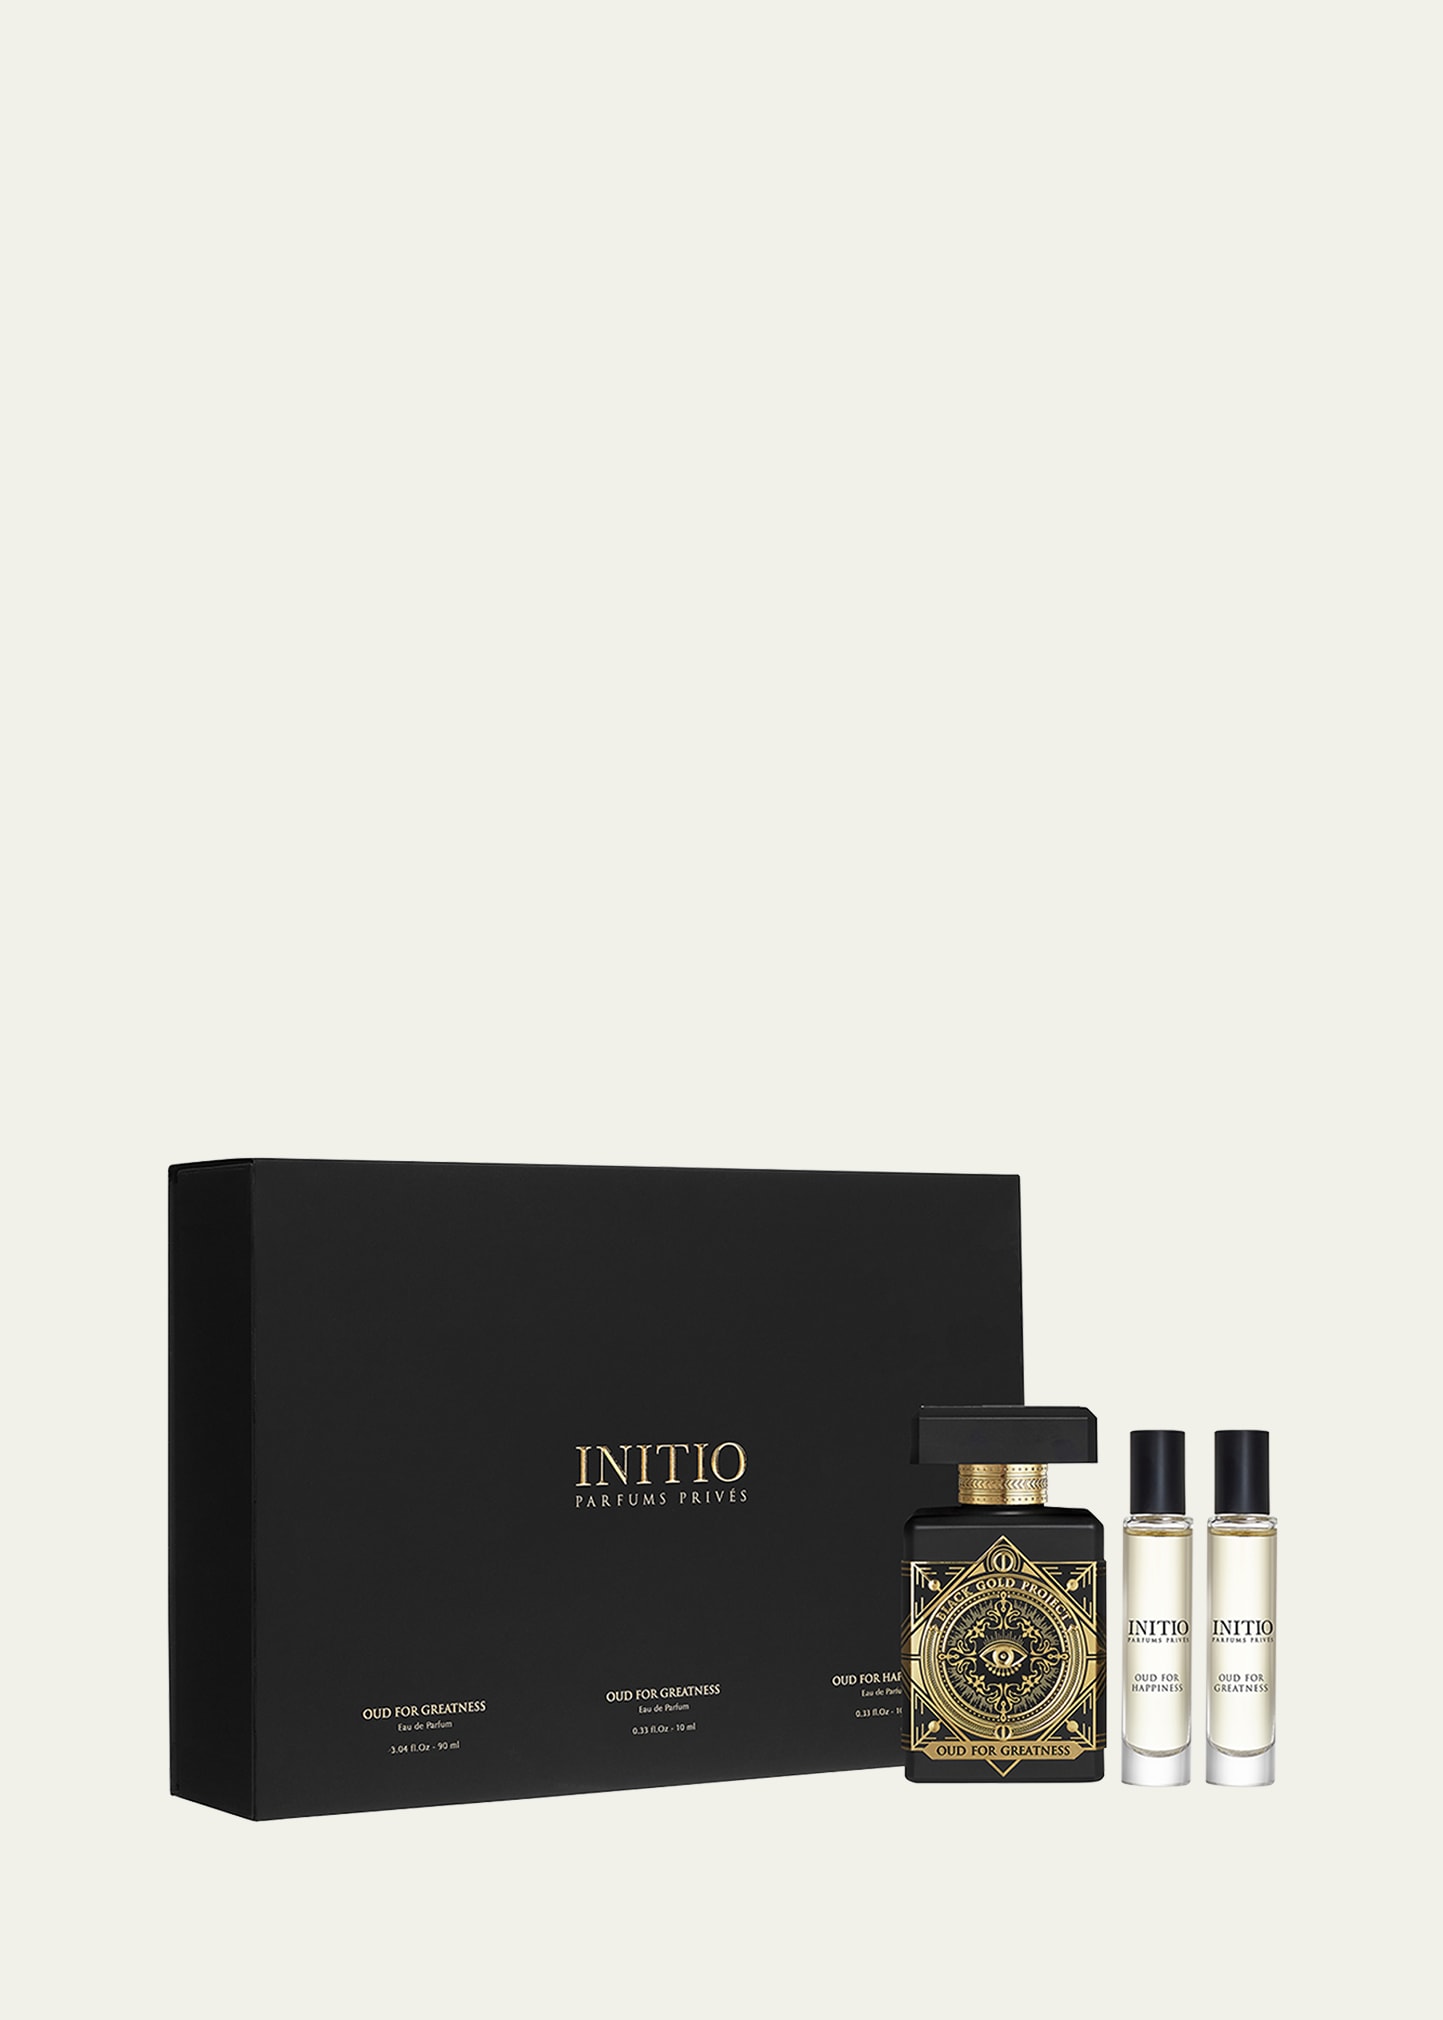 Shop Initio Parfums Prives Oud For Greatness Eau De Parfum Coffret